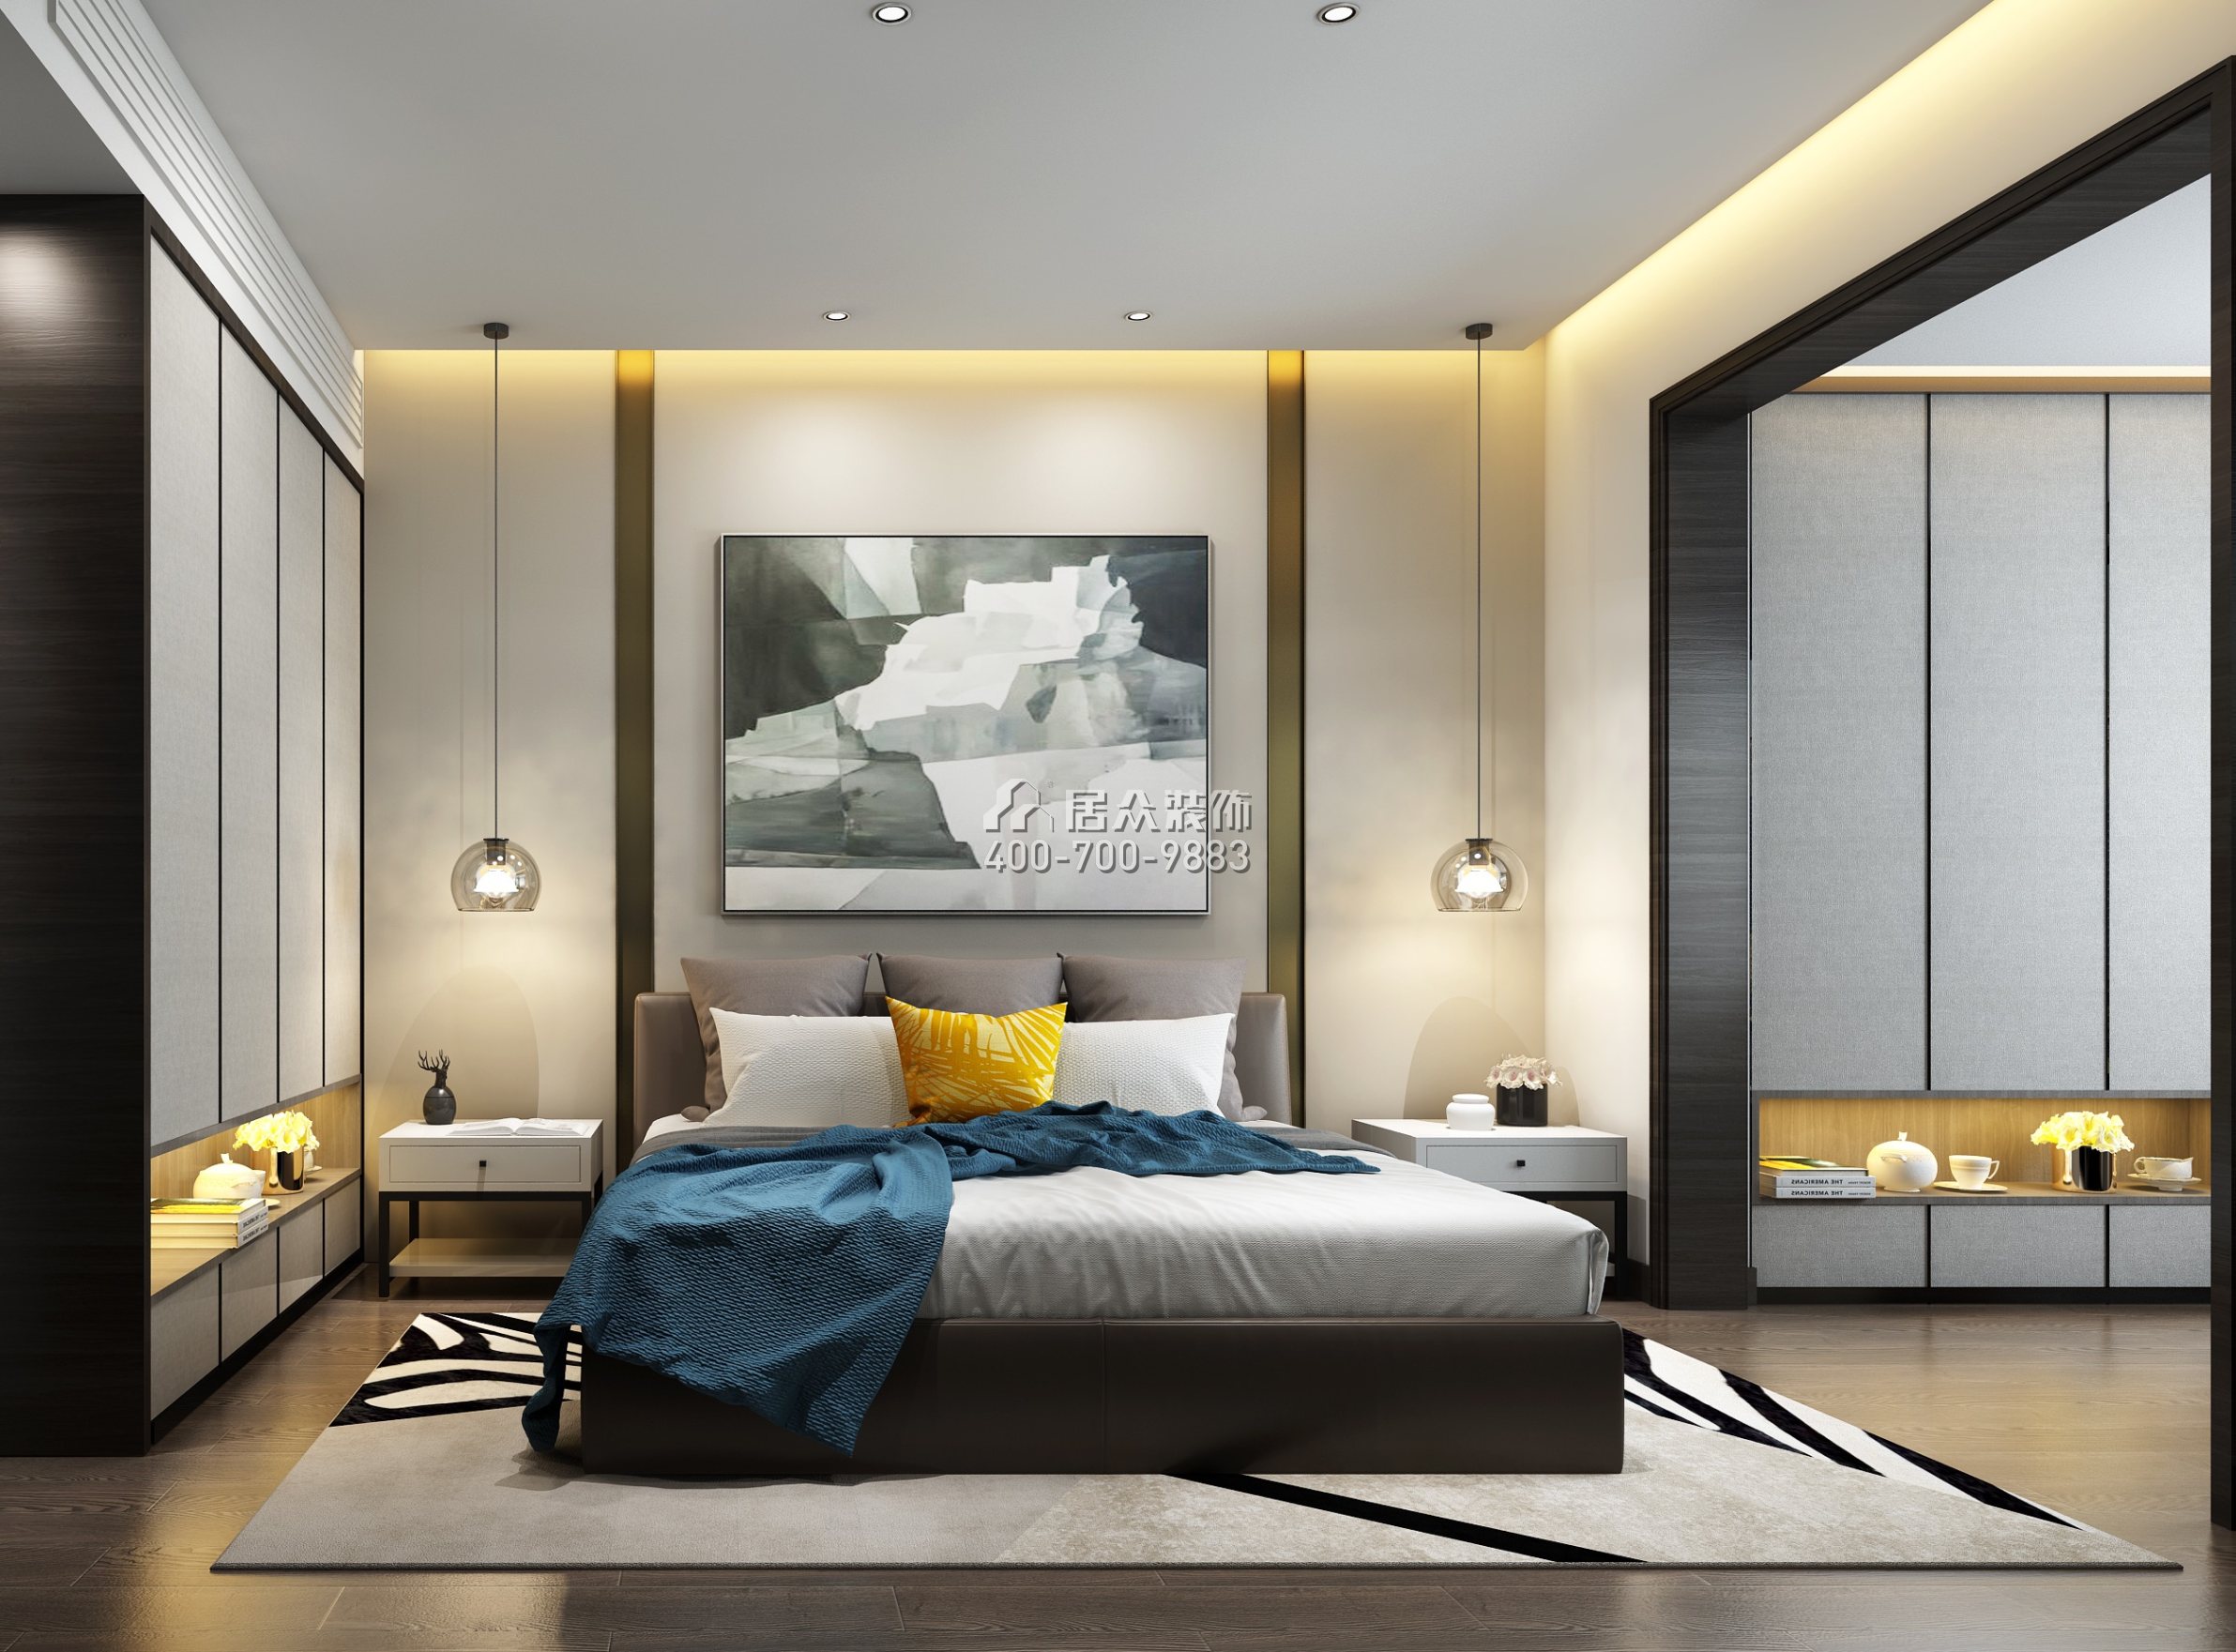 銀湖藍山潤園二期260平方米現代簡約風格平層戶型臥室裝修效果圖